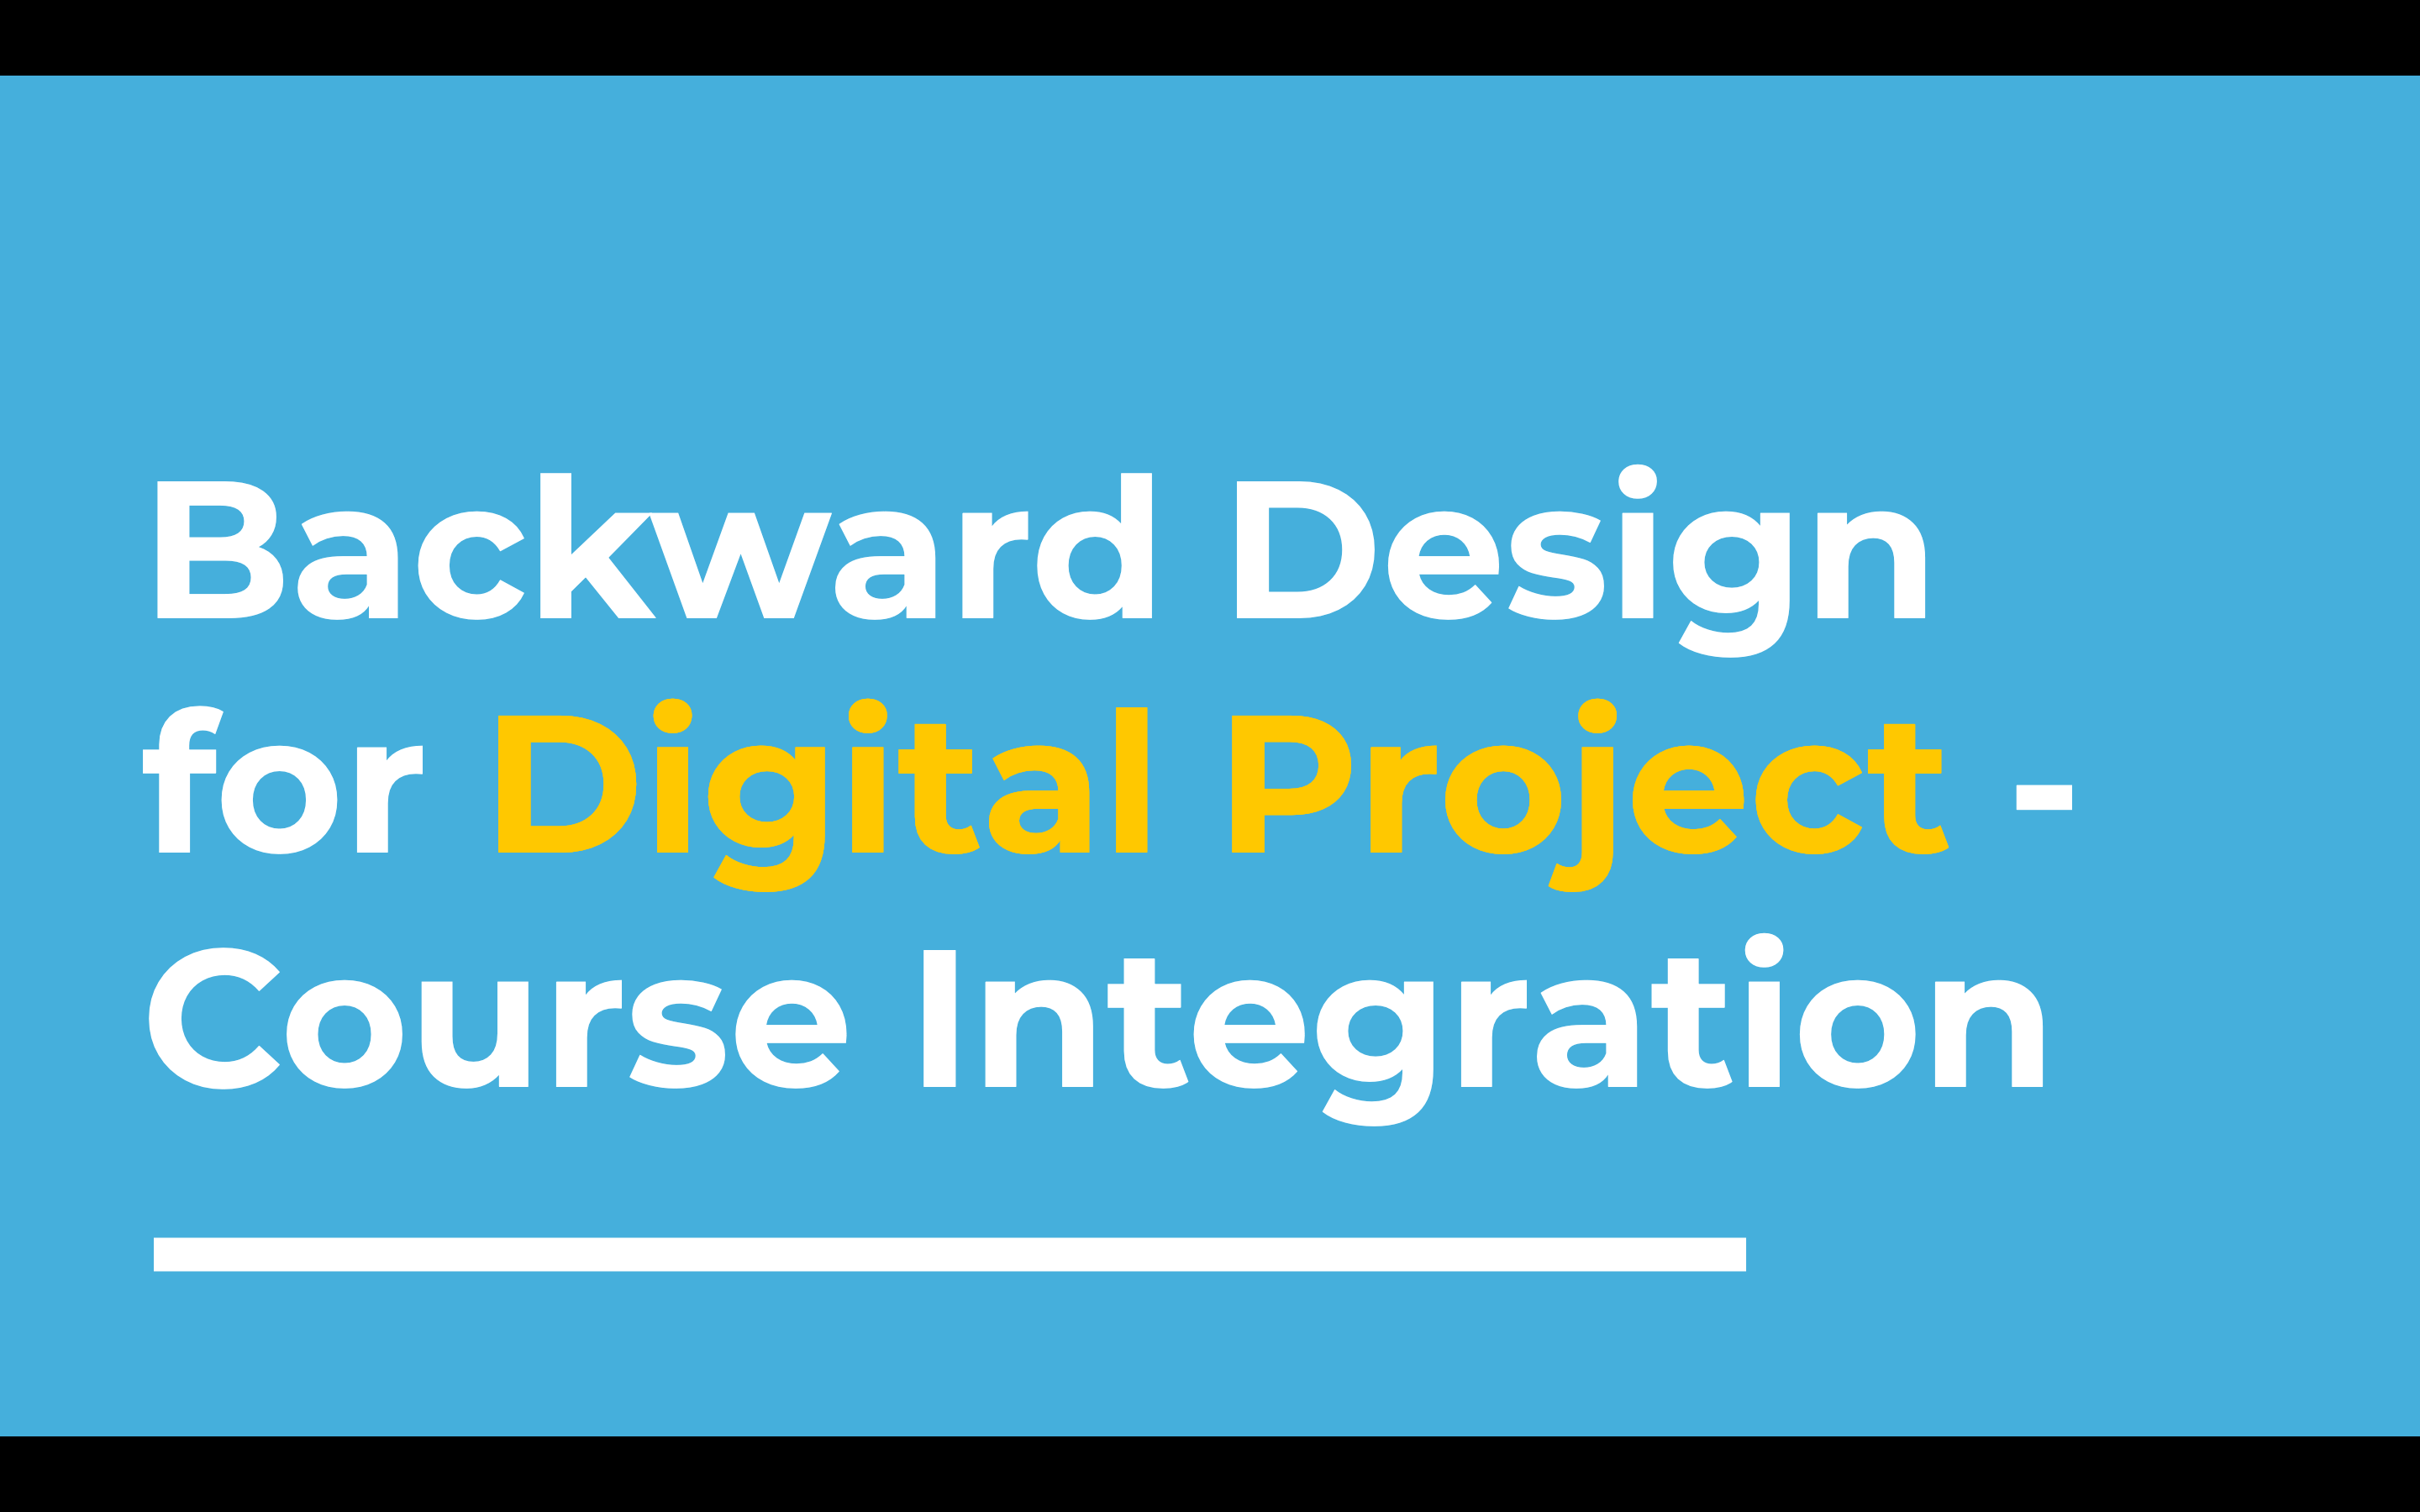 Intro Slide with workshop title: "Backward design for digital project course integration"